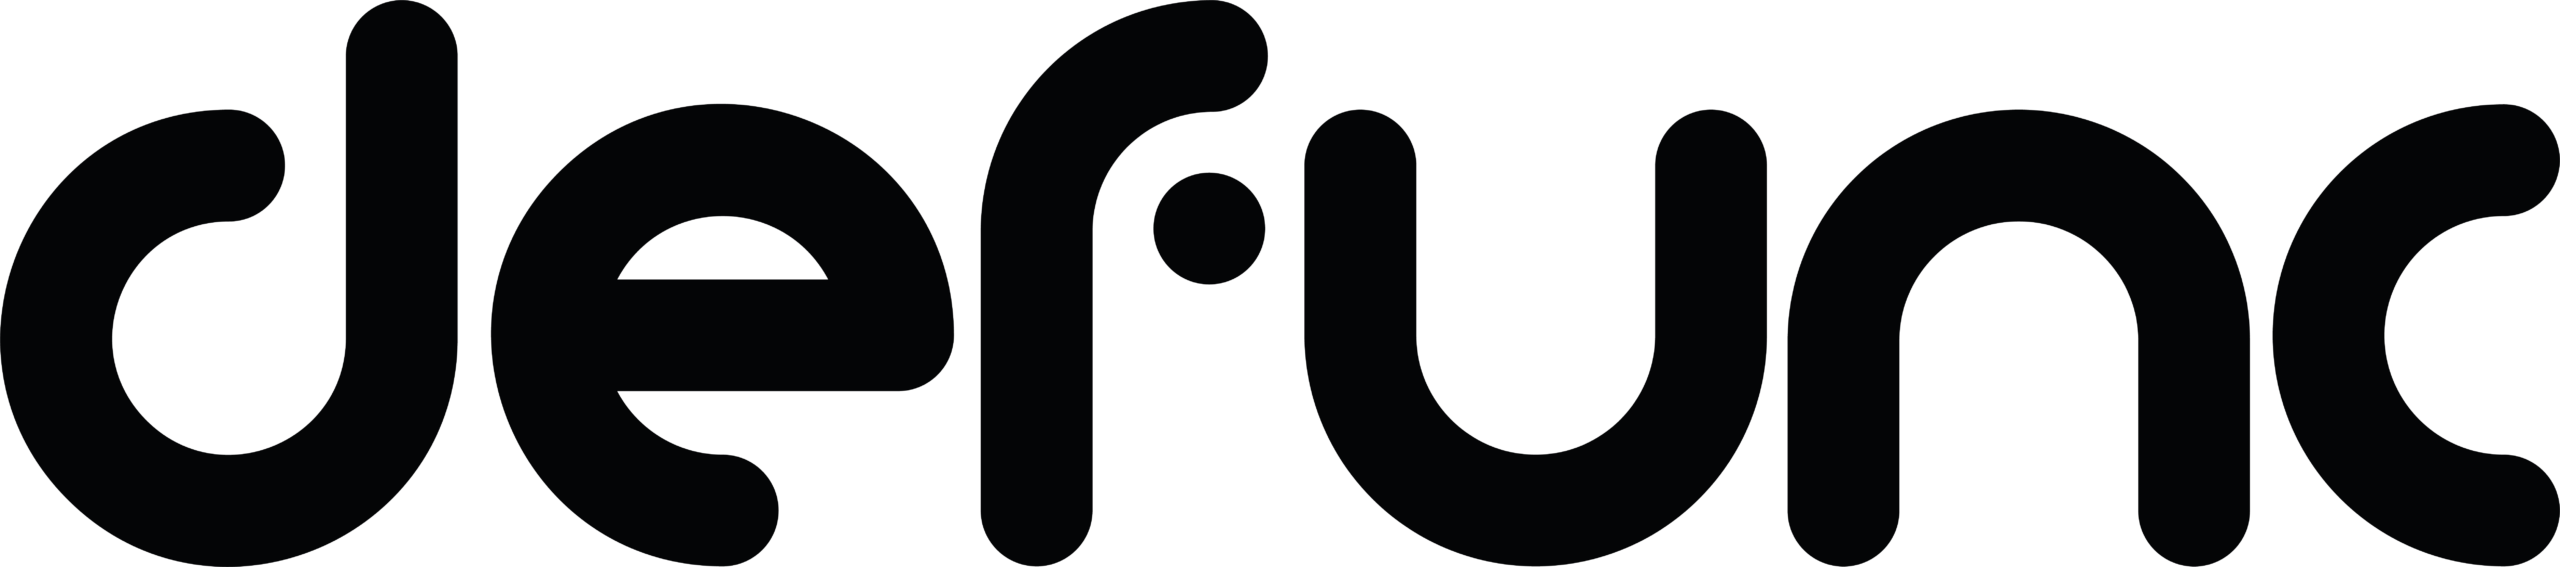 Defunc Logo black